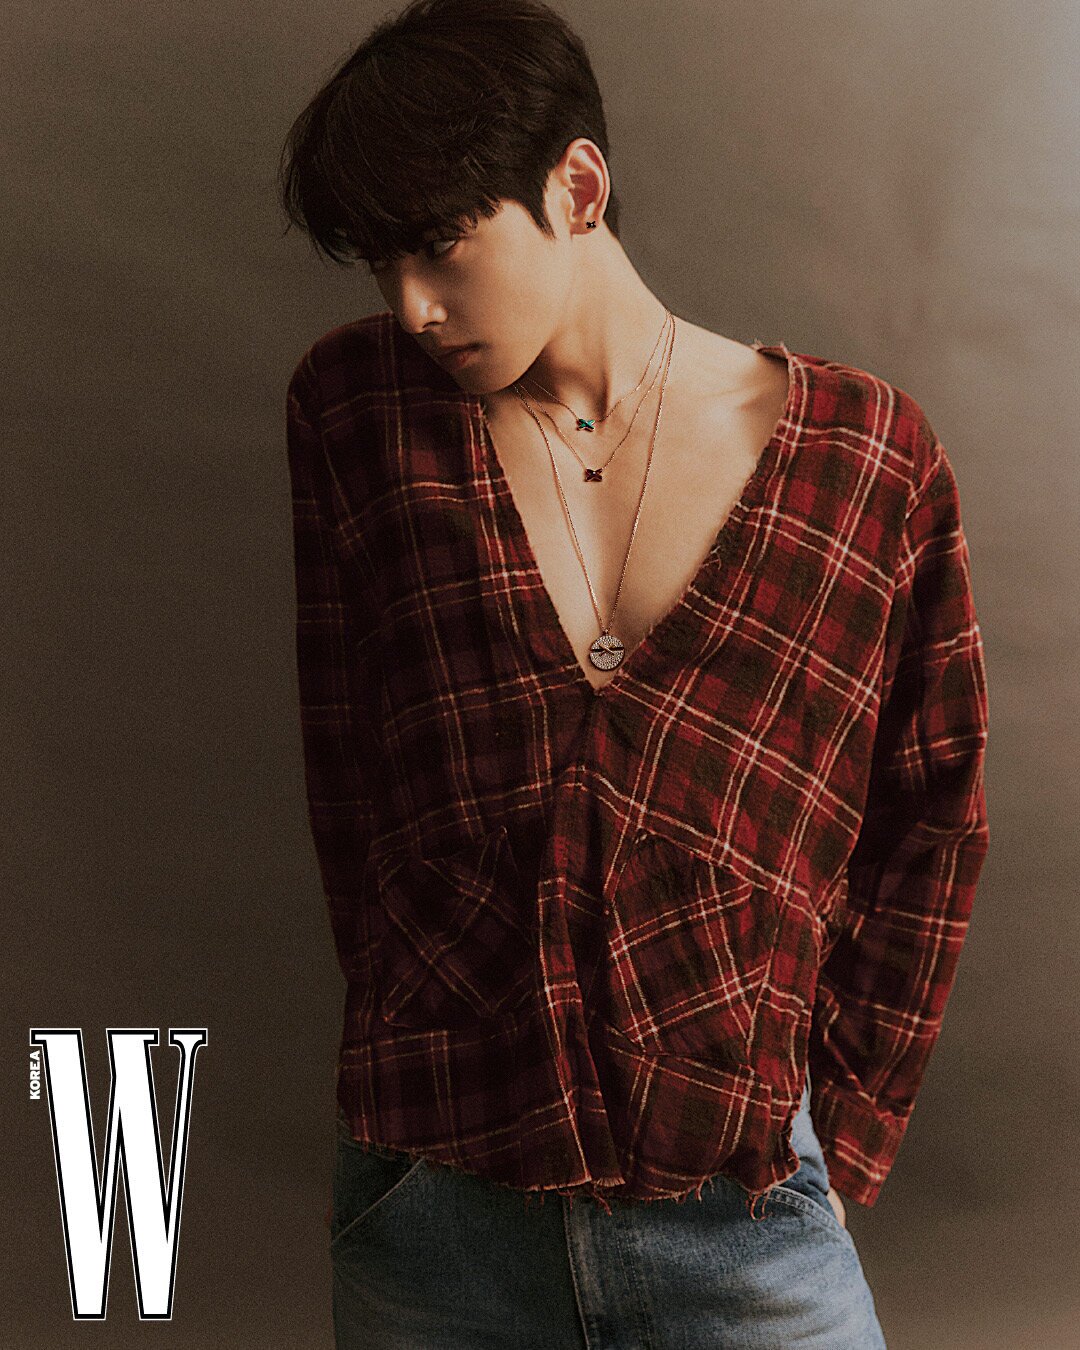 Eunwoo for W Korea Digital Cover Magazine 2022 • • • #Eunwoo #Kpop  #Astrokpop #Eunwooastro #아스트로 #Leedongmin #chaeunwoo #Leedongminastro…